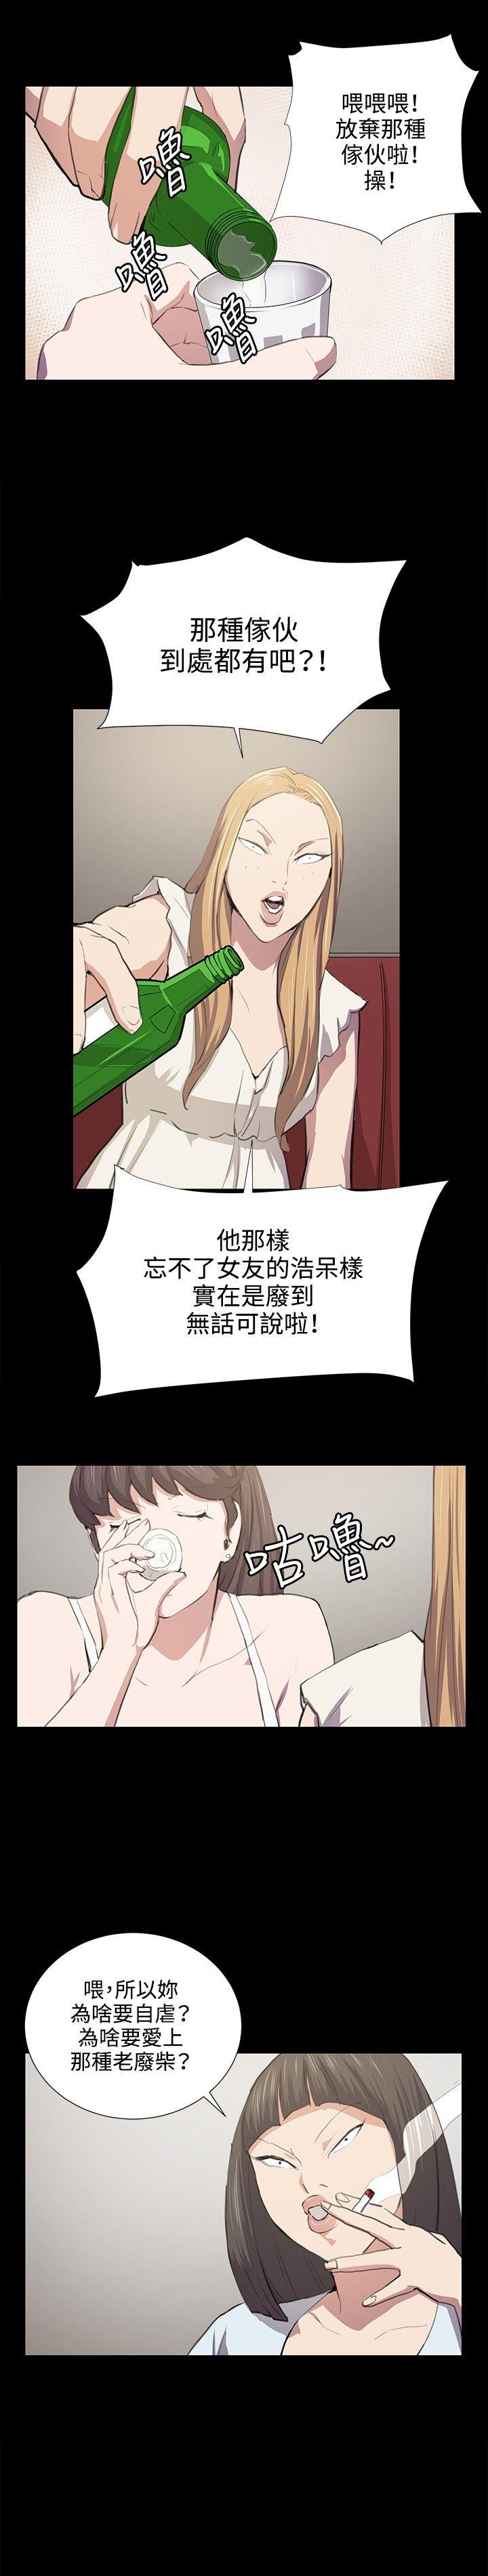 韩国污漫画 深夜便利店 第48话 14